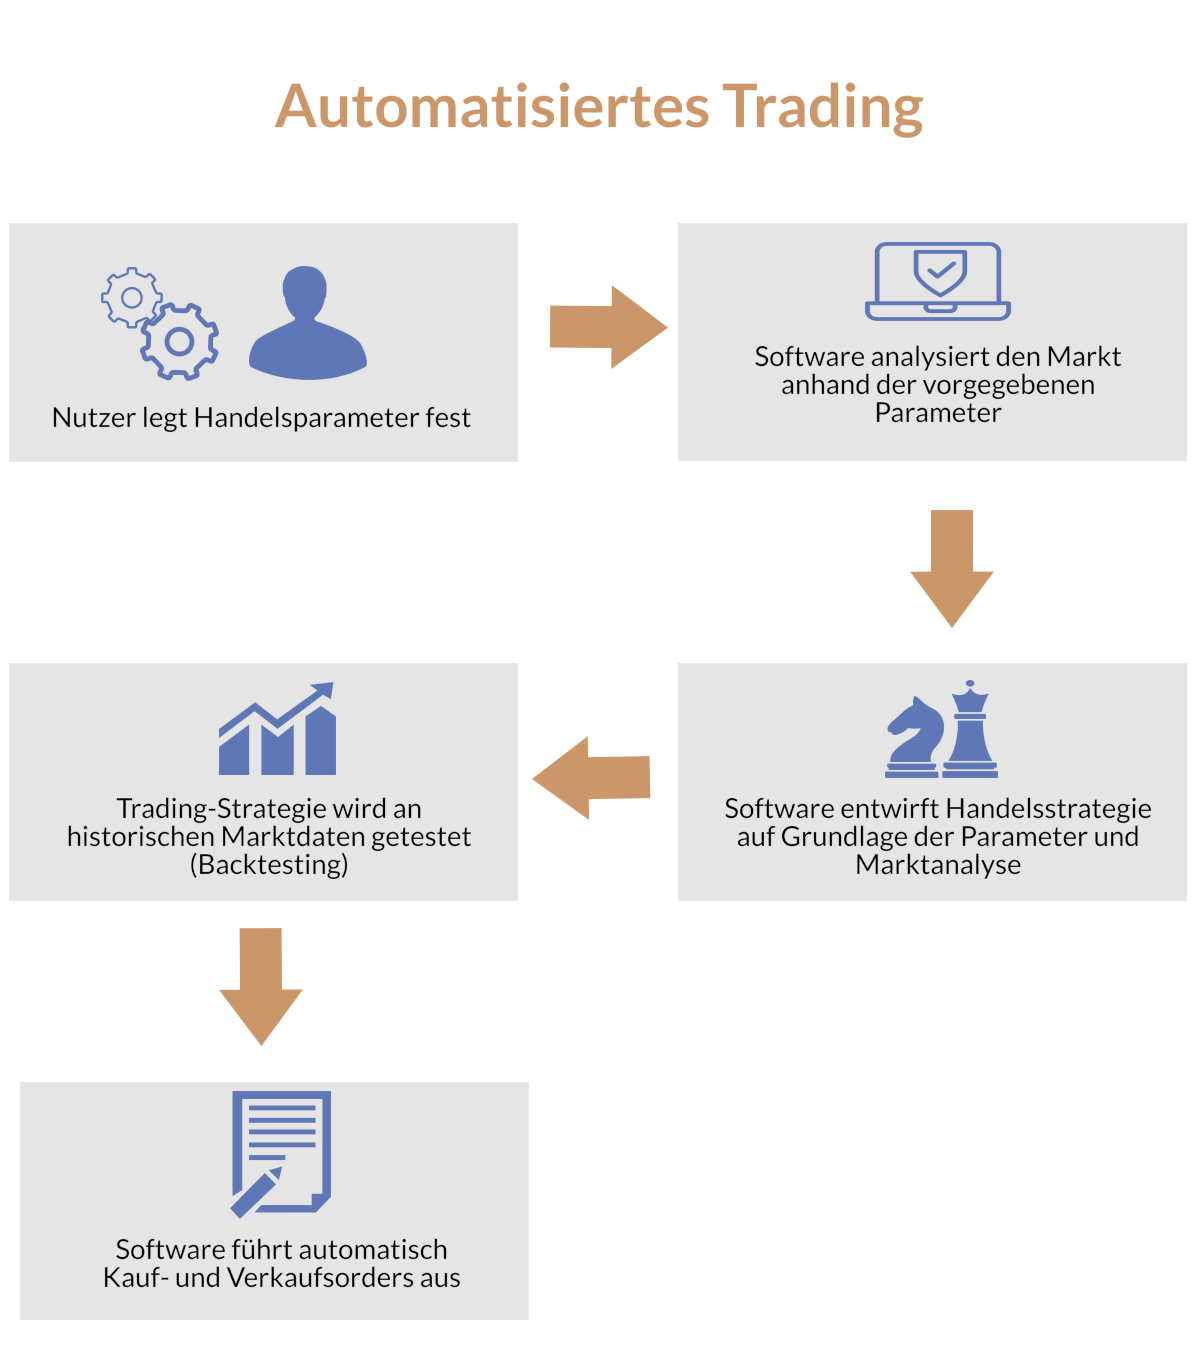 Funktionsweise von automatisiertem Trading